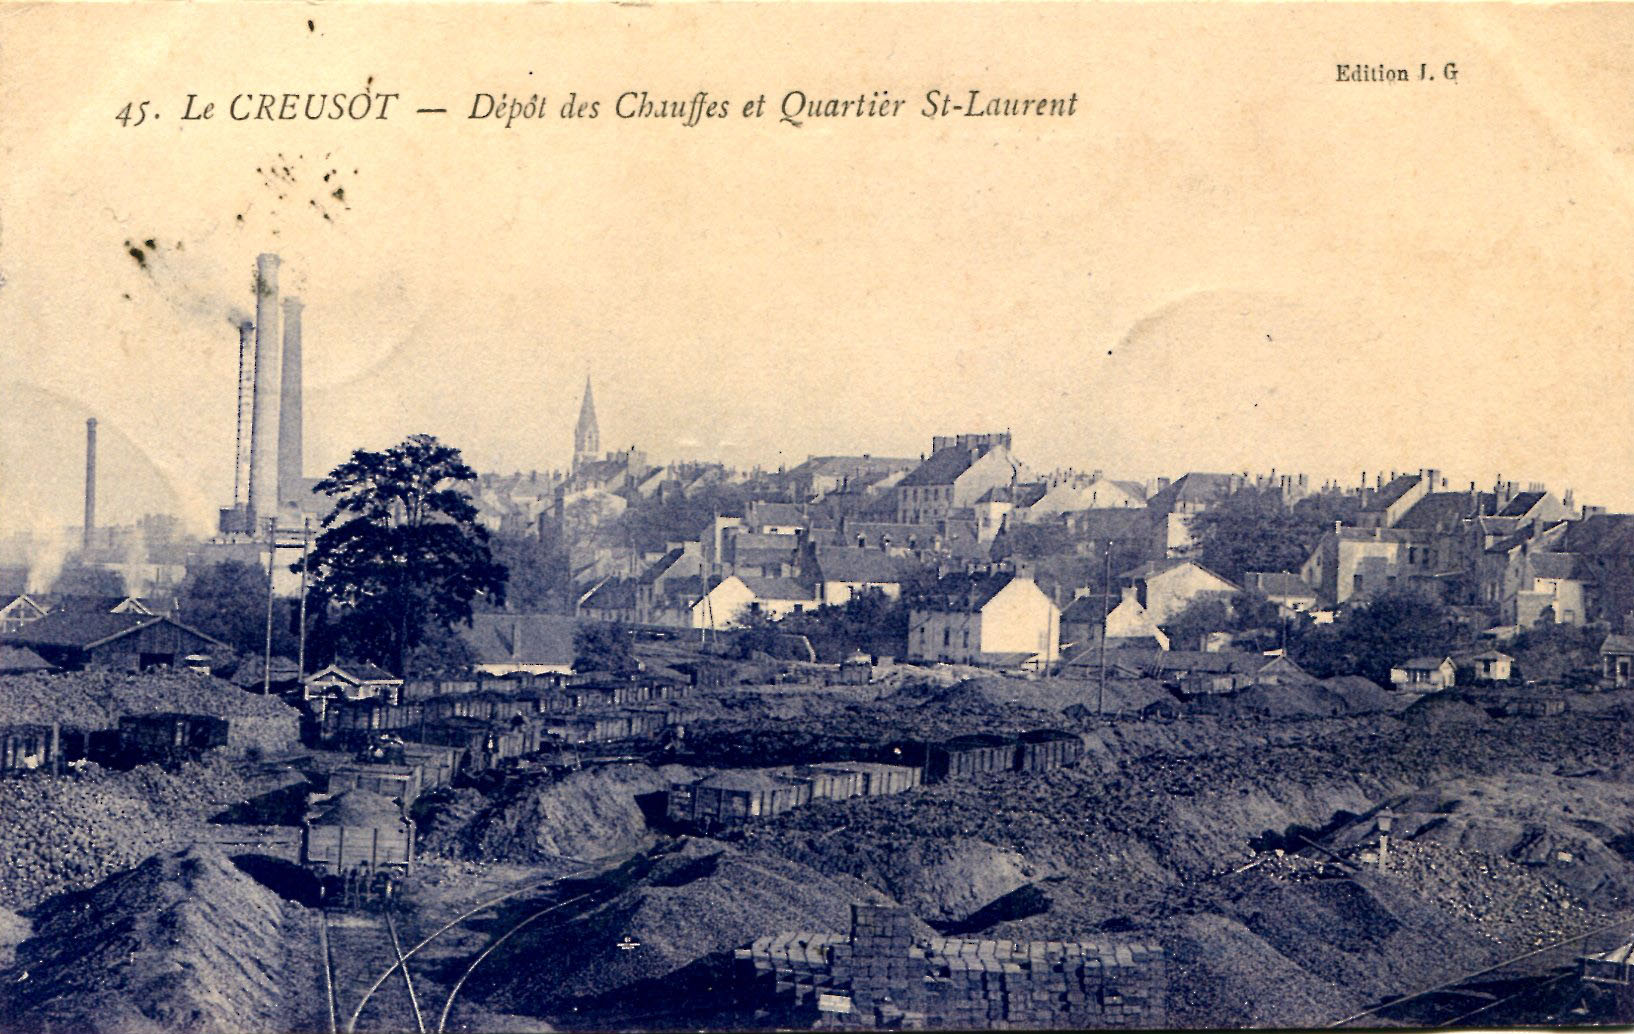 41-Dépôt de chauffes - Quartier St-Laurent